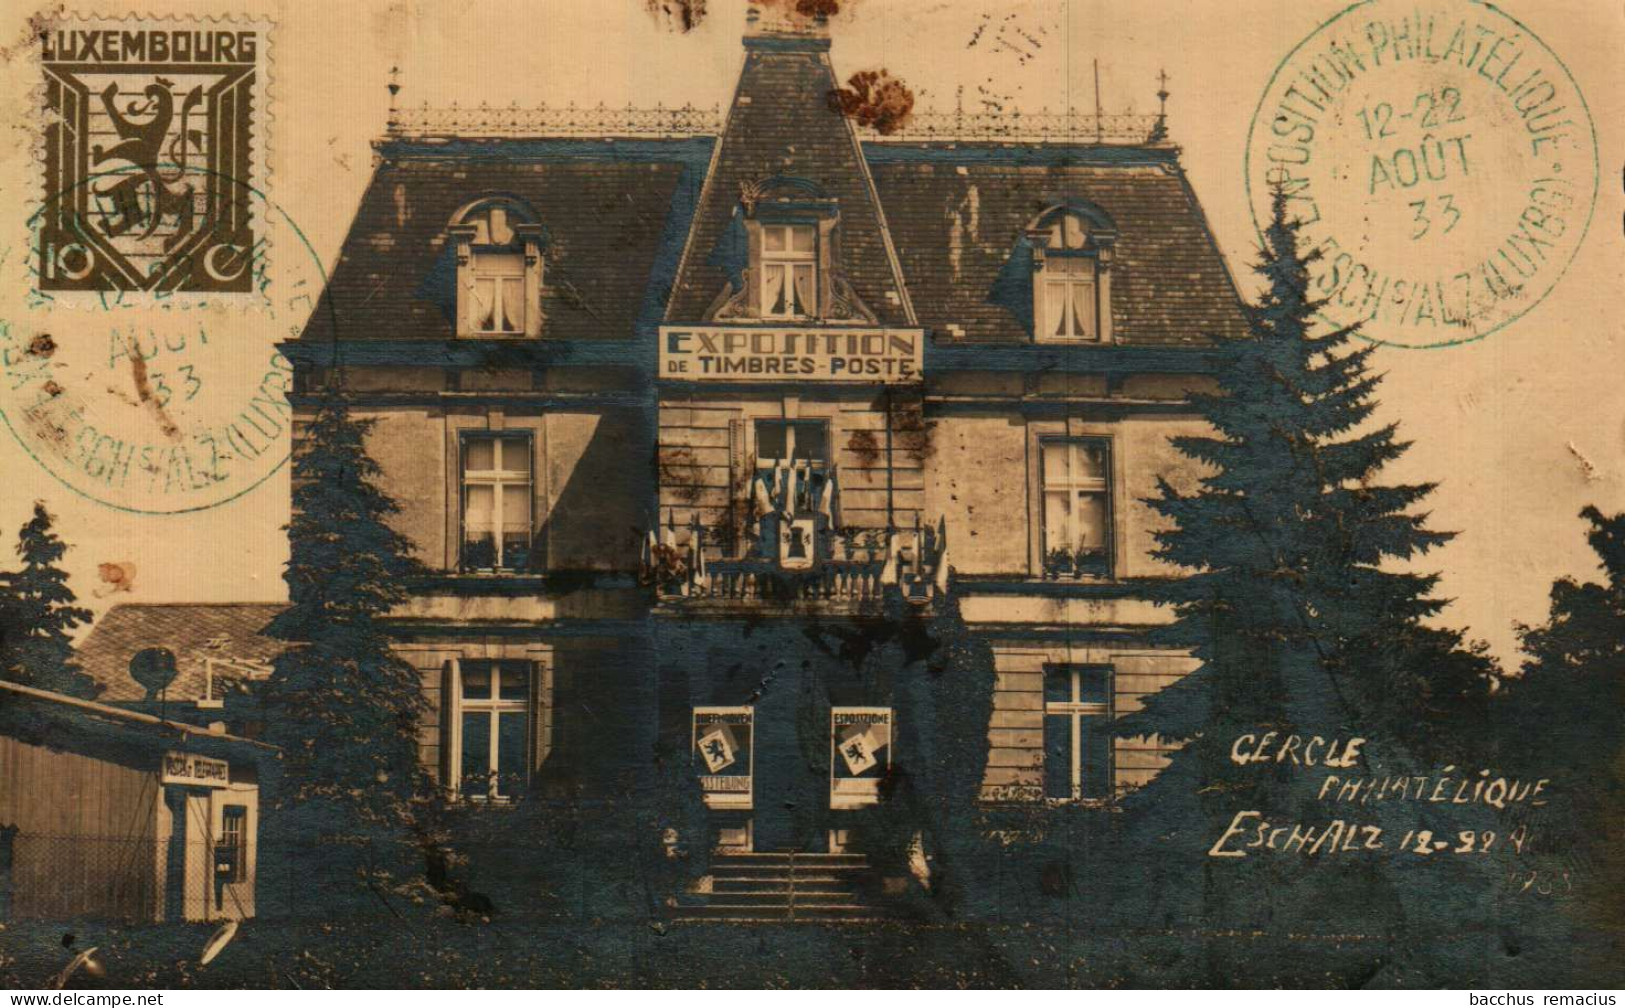 ESCH-SUR-ALZETTE   Carte-Photo Exposition De Timbres-Poste 12-22.8.1933 Du Cercle Philatélique Esch-Alzette - Esch-Alzette